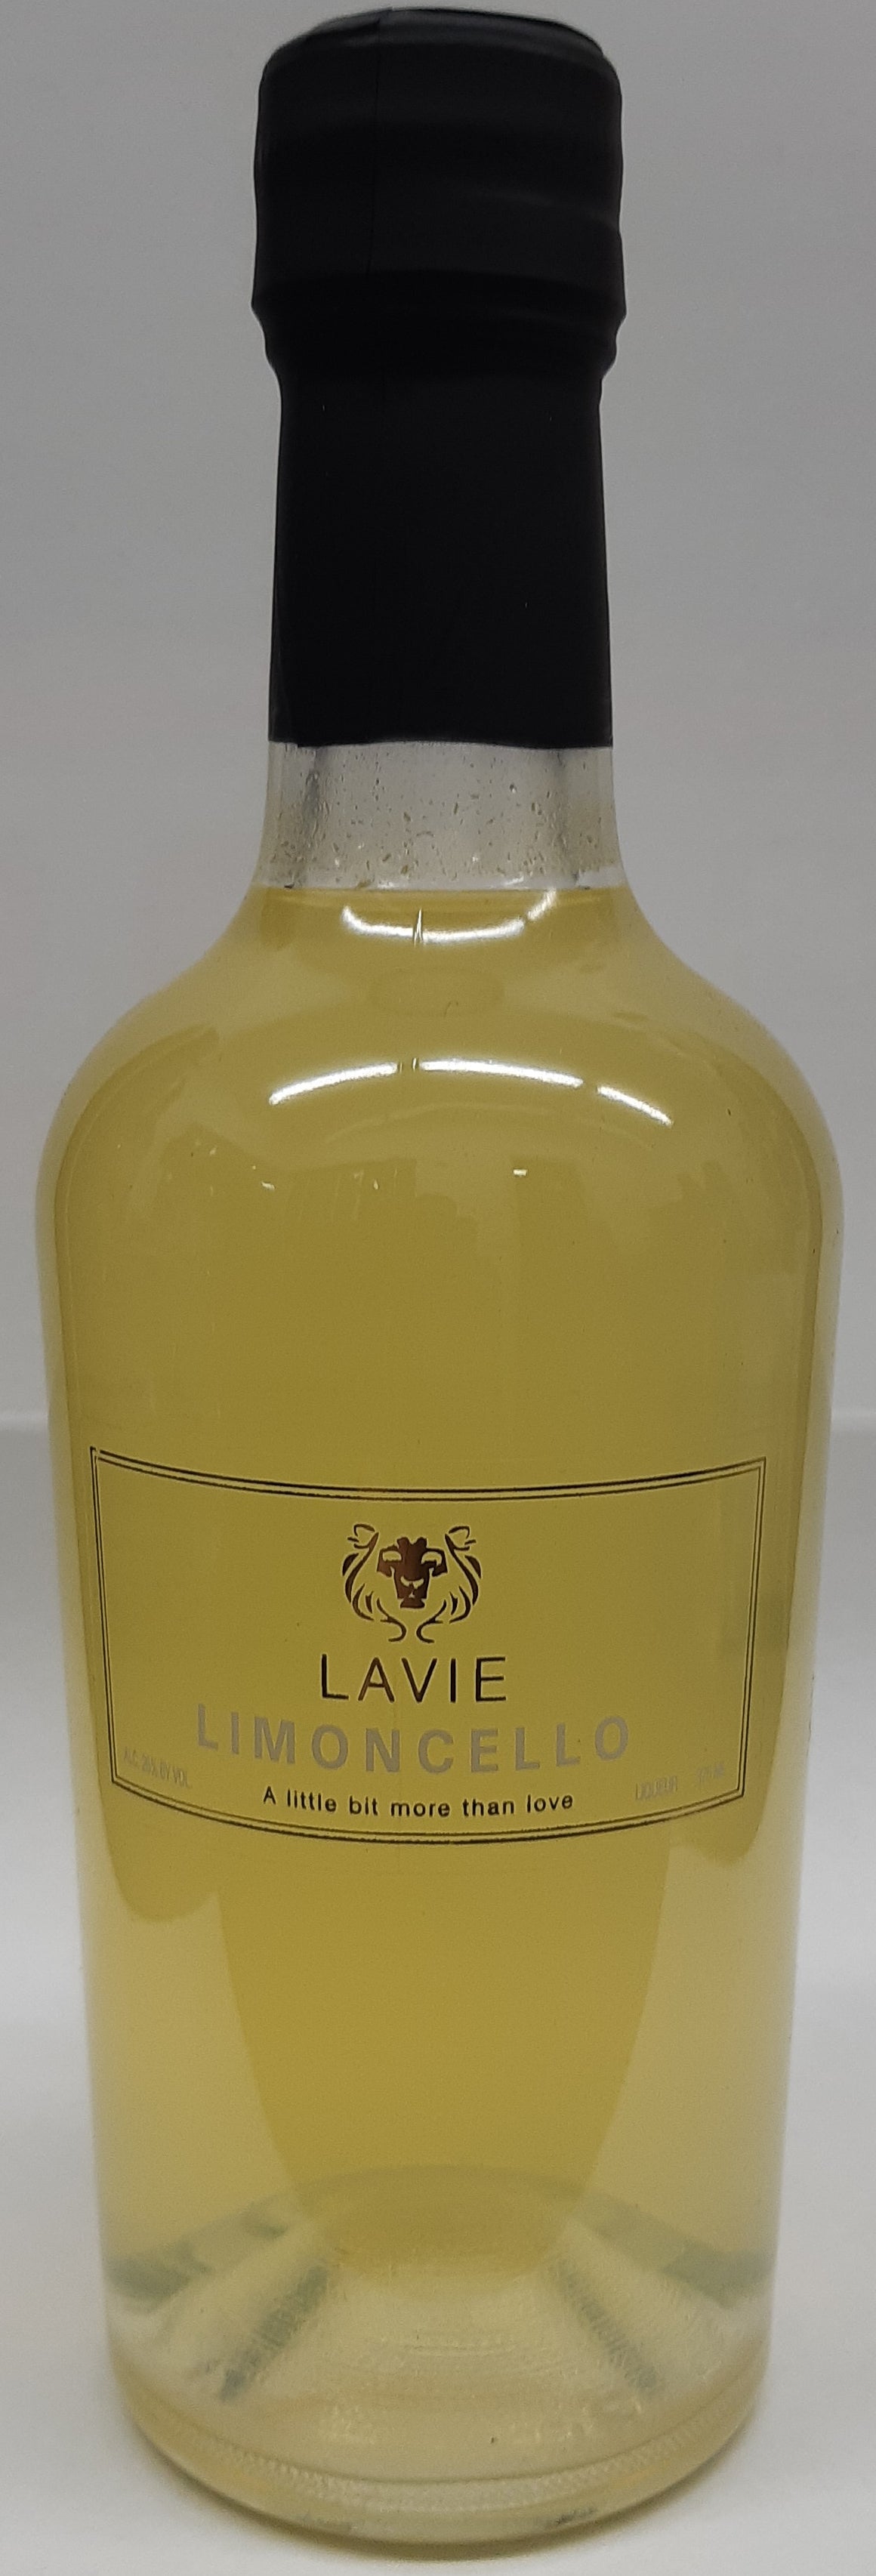 Lavie Limoncello Supreme Liqueur 375Ml